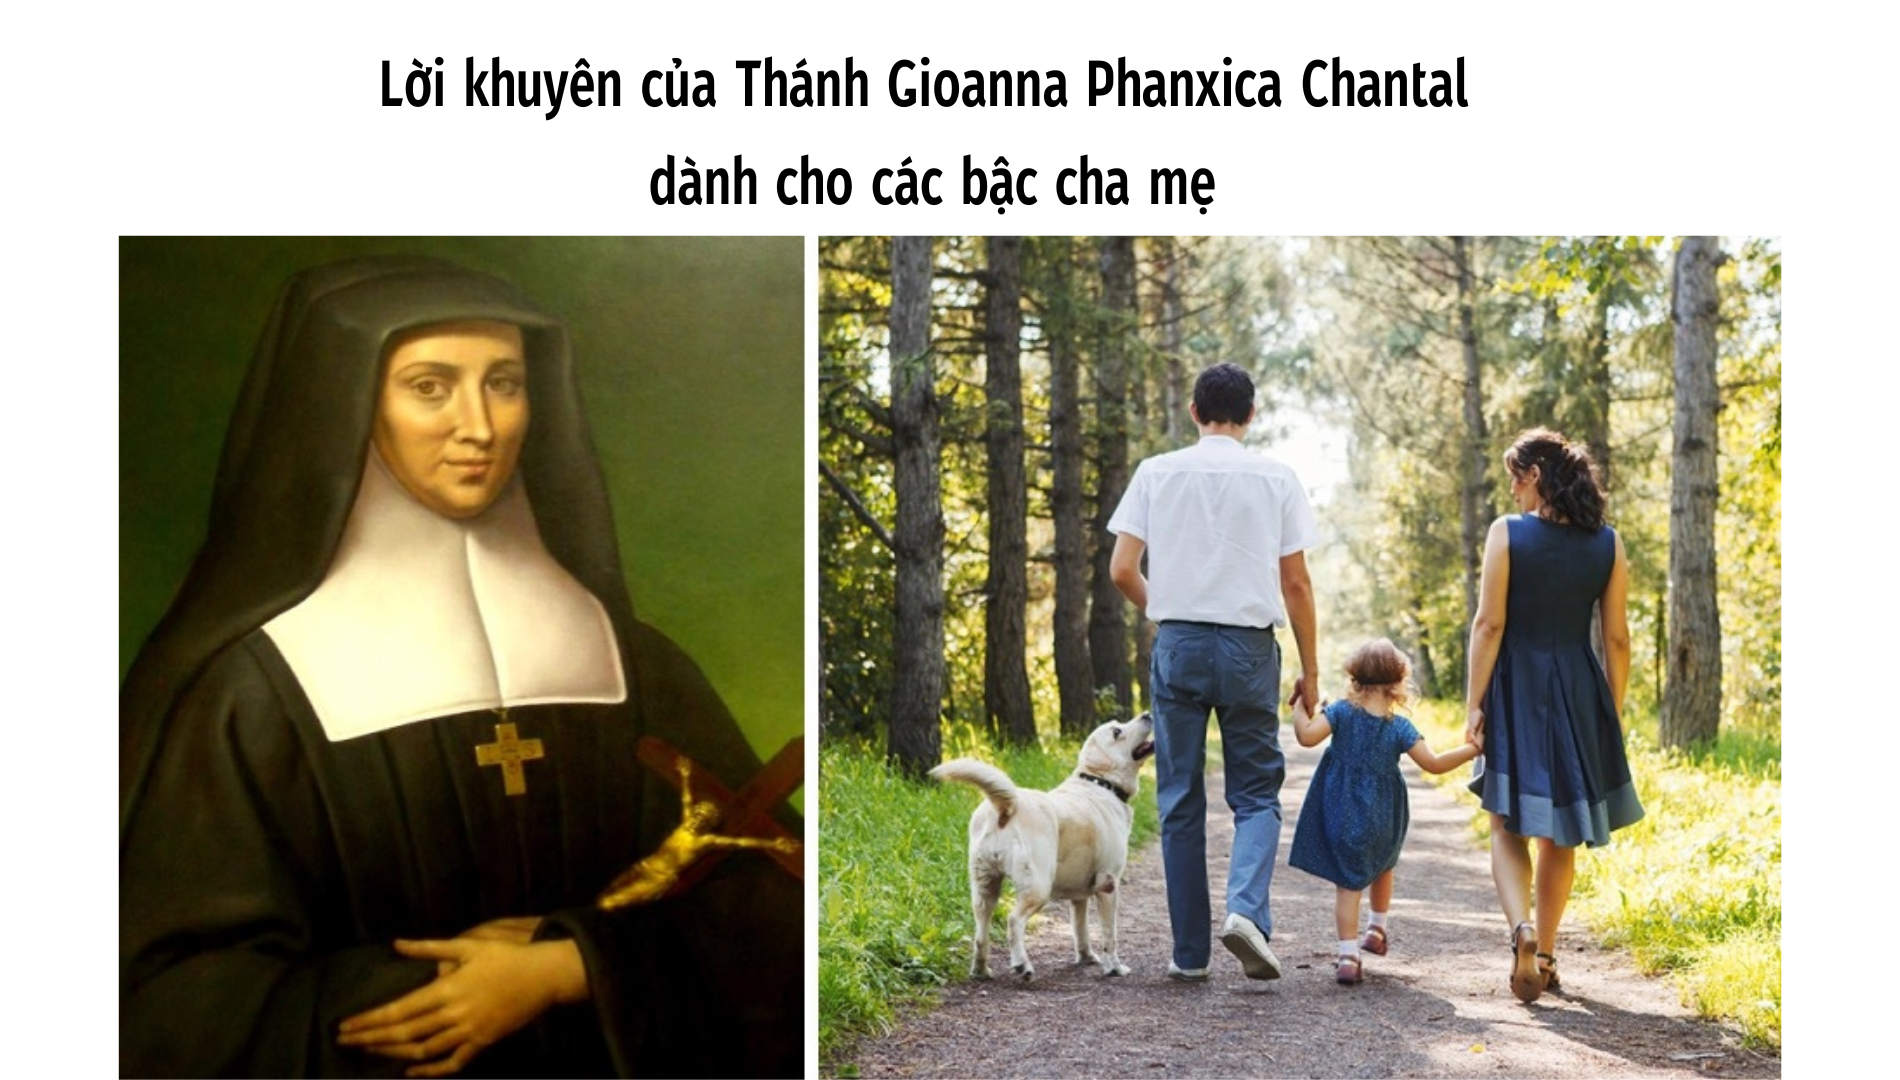 Lời khuyên của Thánh Gioanna Phanxica Chantal dành cho các bậc cha mẹ